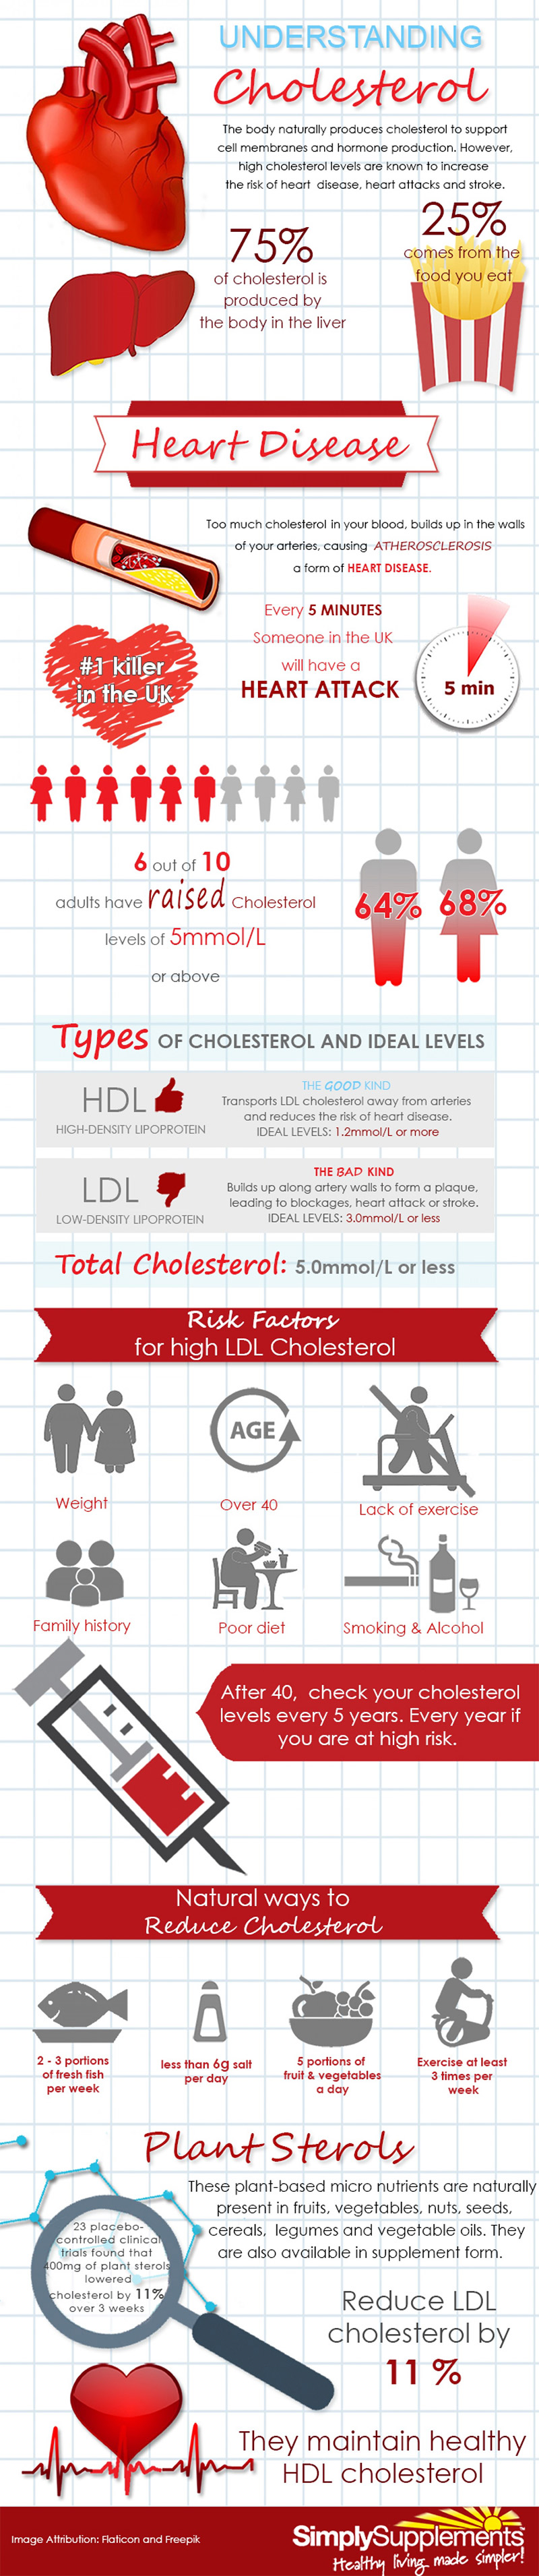 cholesterol-factors